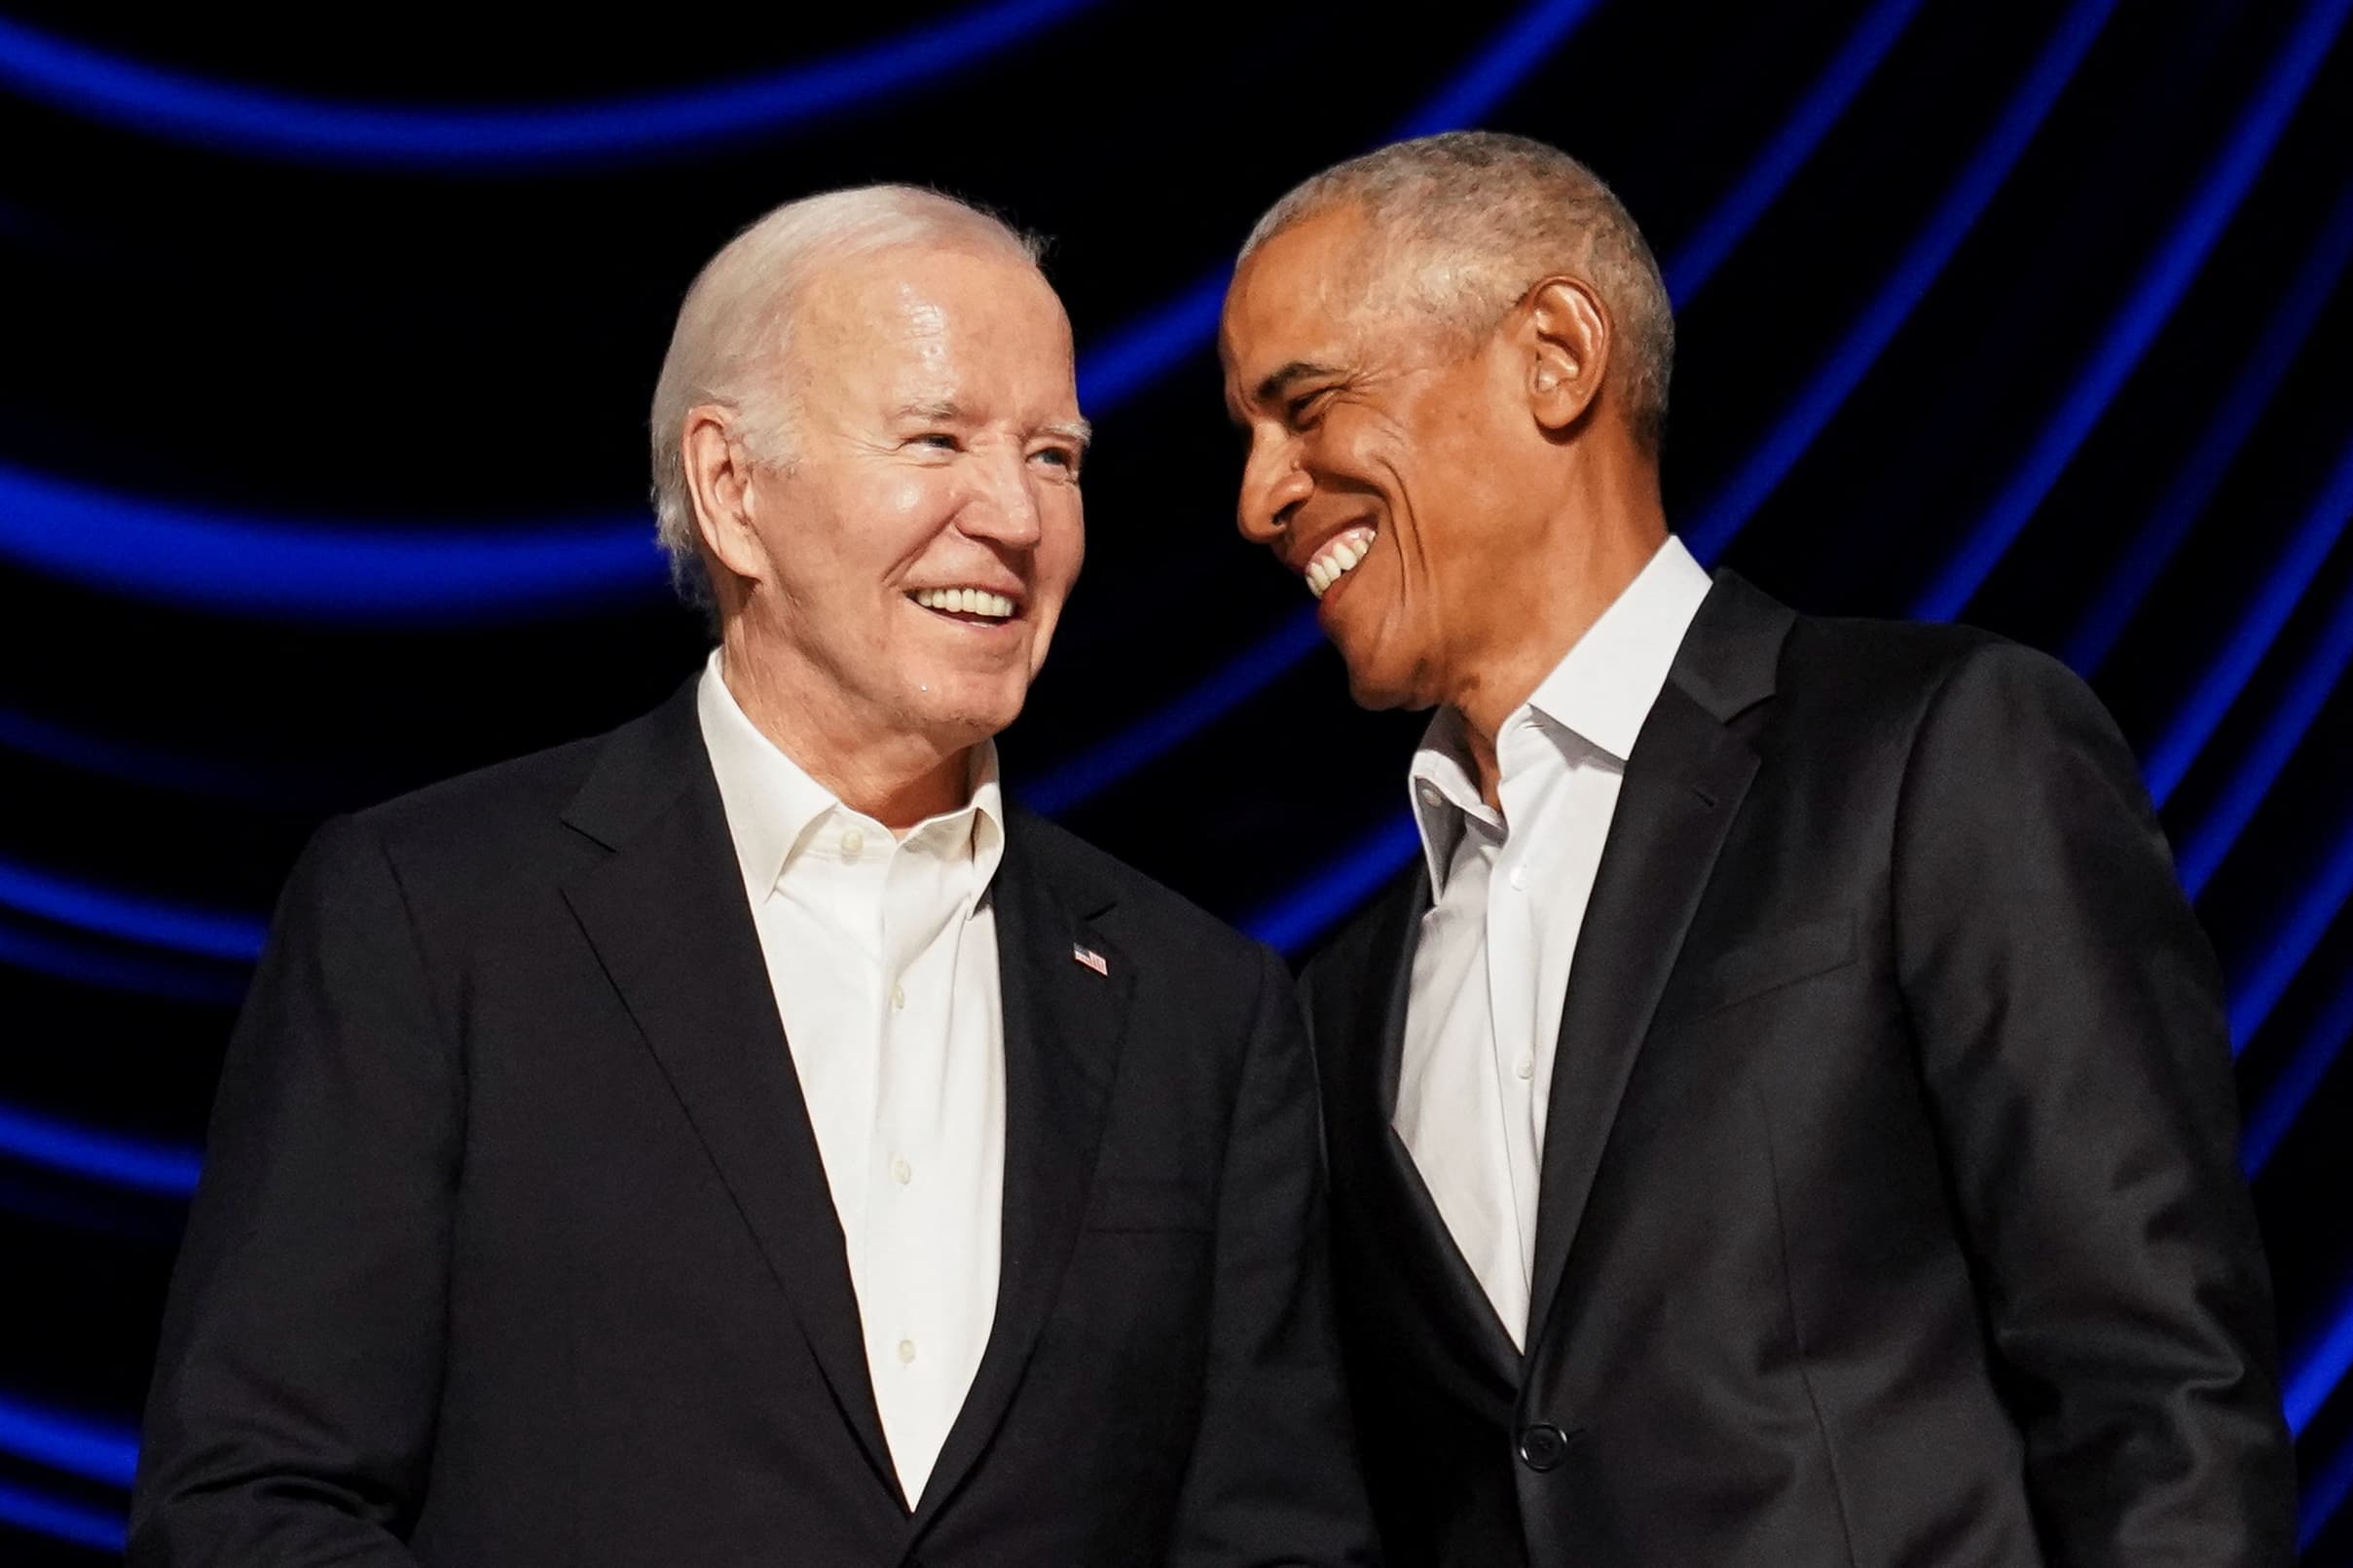  Obama e Biden a Hollywood: raccolti 28 milioni per la campagna elettorale